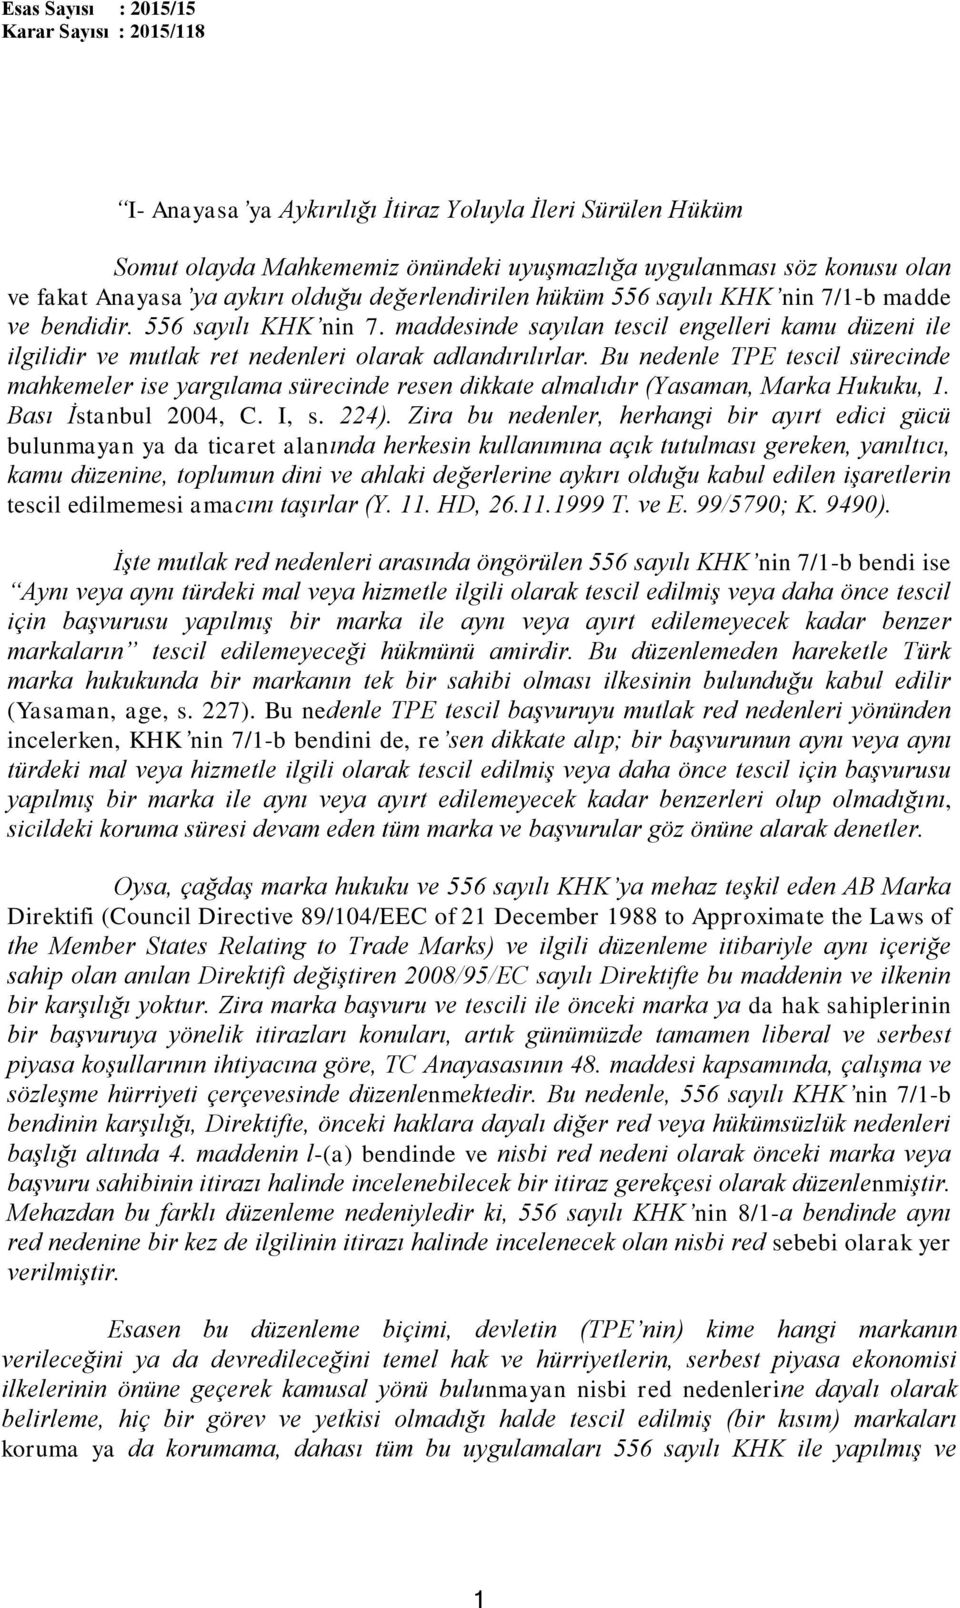 Bu nedenle TPE tescil sürecinde mahkemeler ise yargılama sürecinde resen dikkate almalıdır (Yasaman, Marka Hukuku, 1. Bası İstanbul 2004, C. I, s. 224).